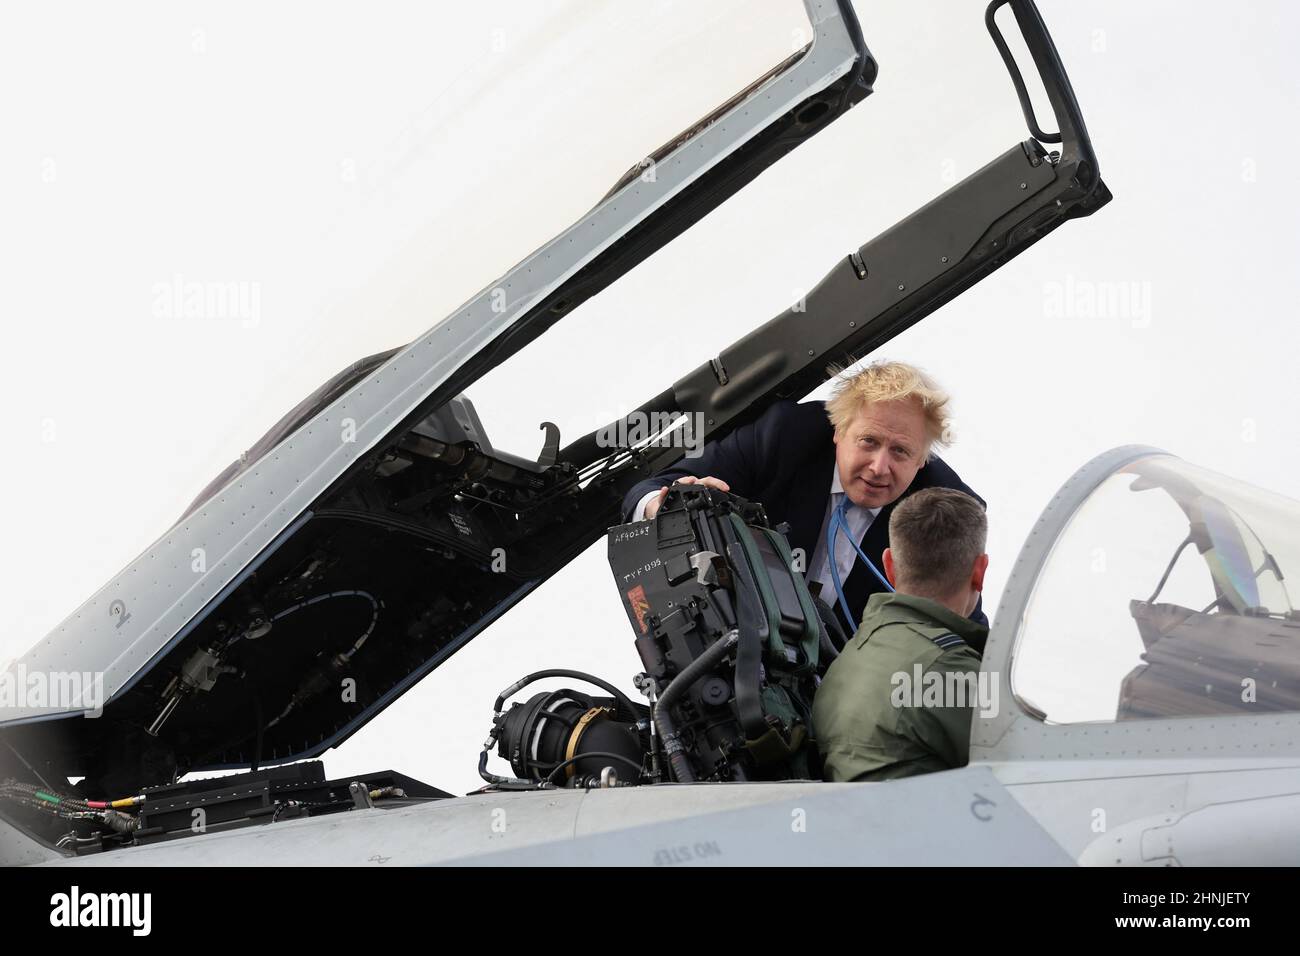 Il primo Ministro Boris Johnson sale in un aereo militare durante la sua visita alla Royal Air Force Station di Waddington nel Lincolnshire dove ha incontrato personale militare. Data immagine: Giovedì 17 febbraio 2022. Foto Stock